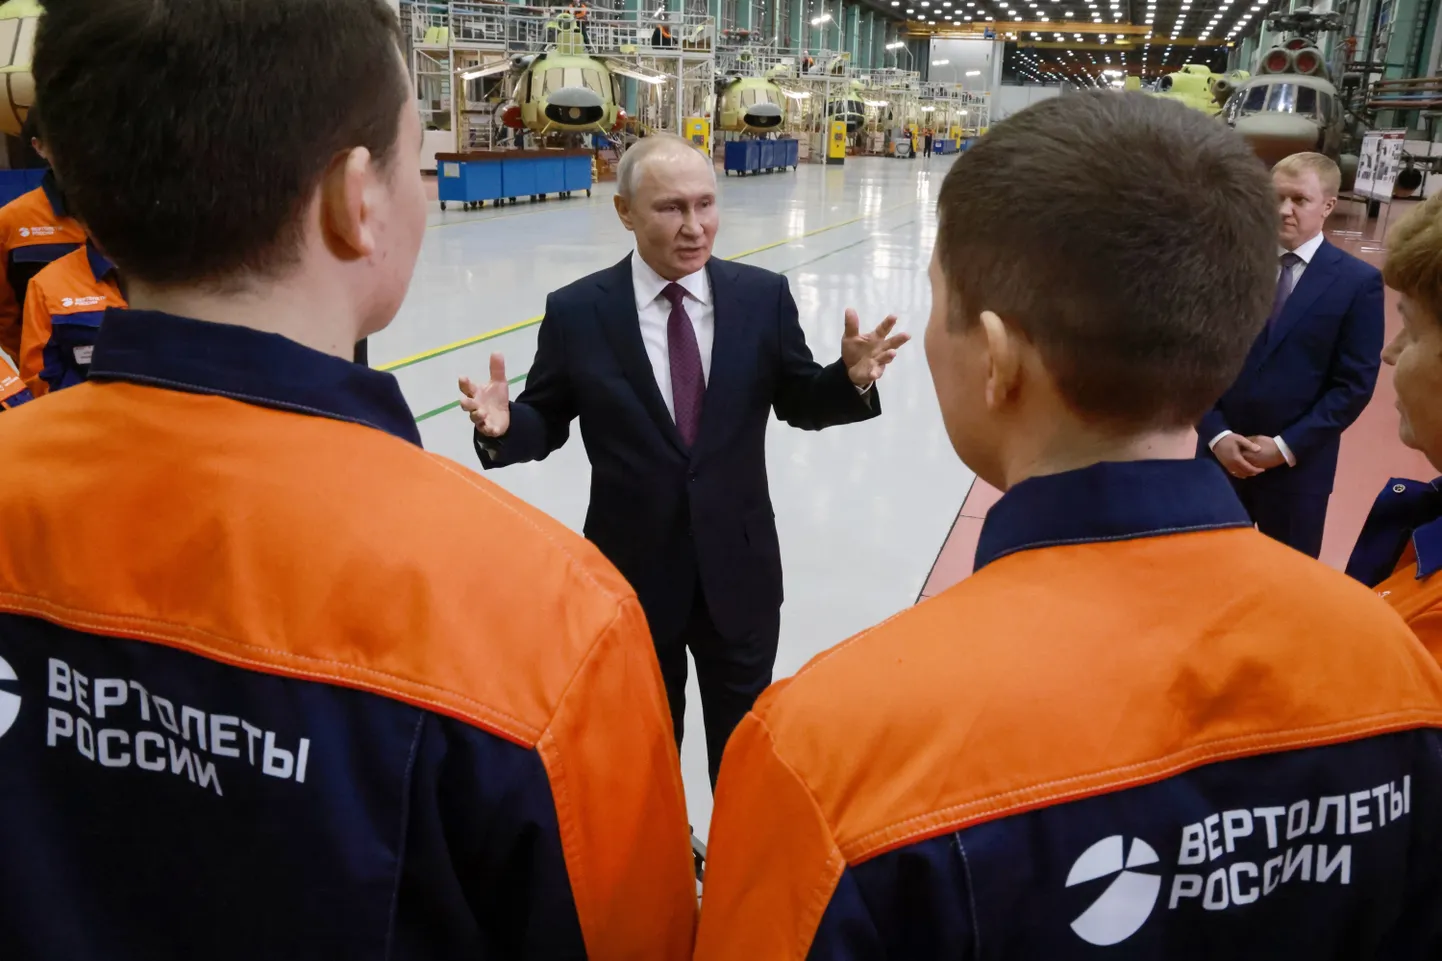 Venemaa president Vladimir Putin kõnetab Rostehi kopteritehase töötajaid Ulan-Udes 14. märtsil 2023